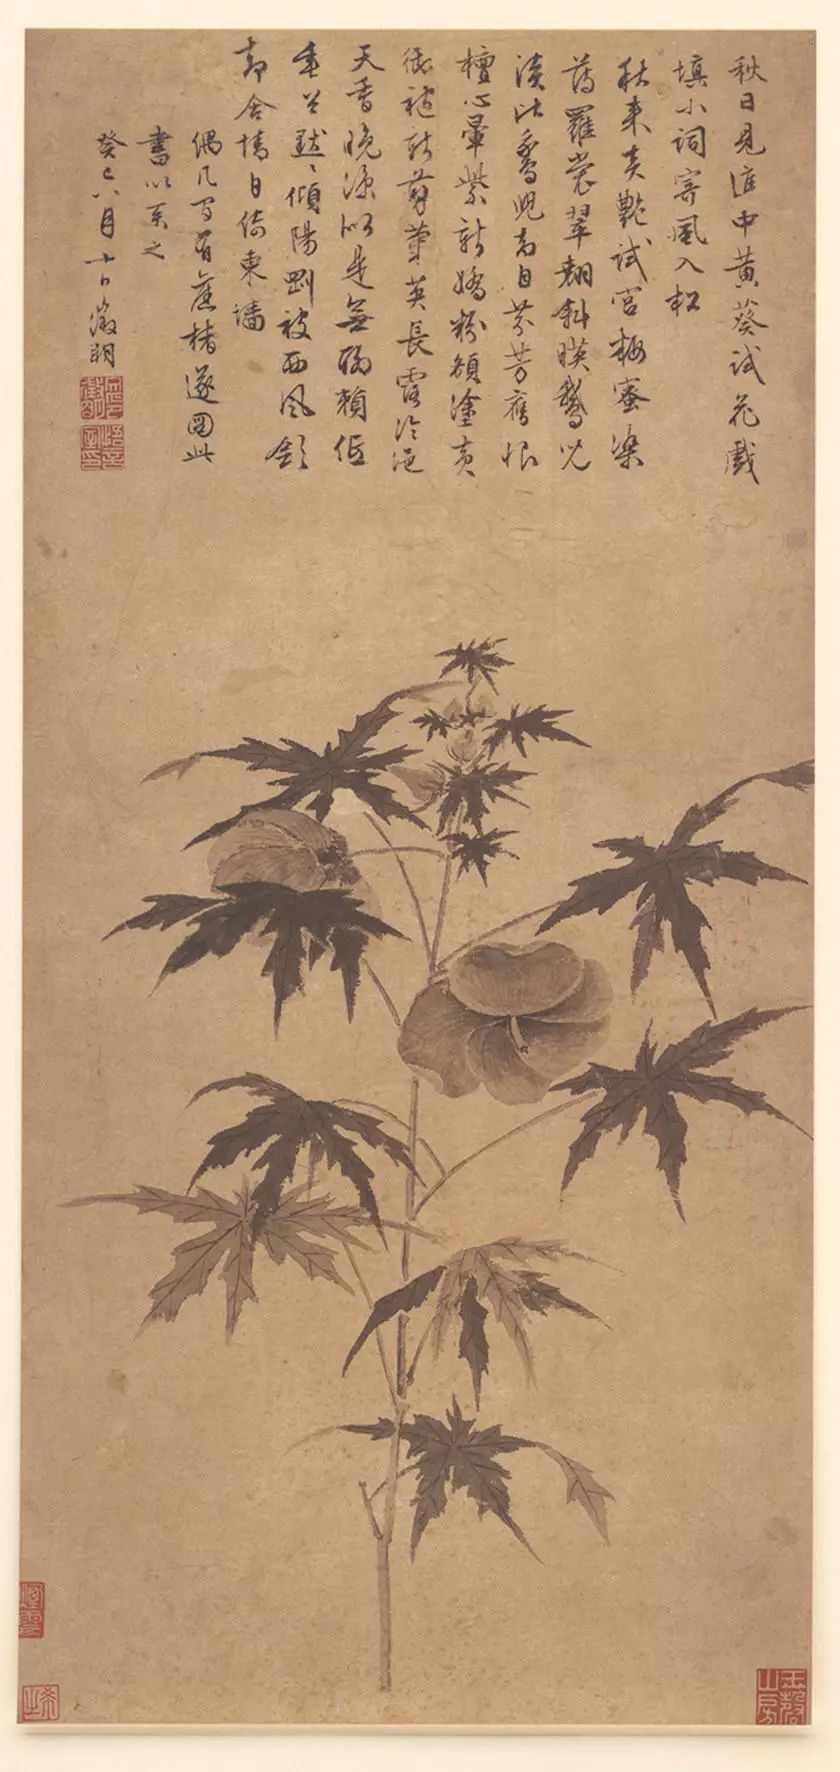 (台北故宫博物院藏 文征明花鸟画的成就其实并不逊于其山水画